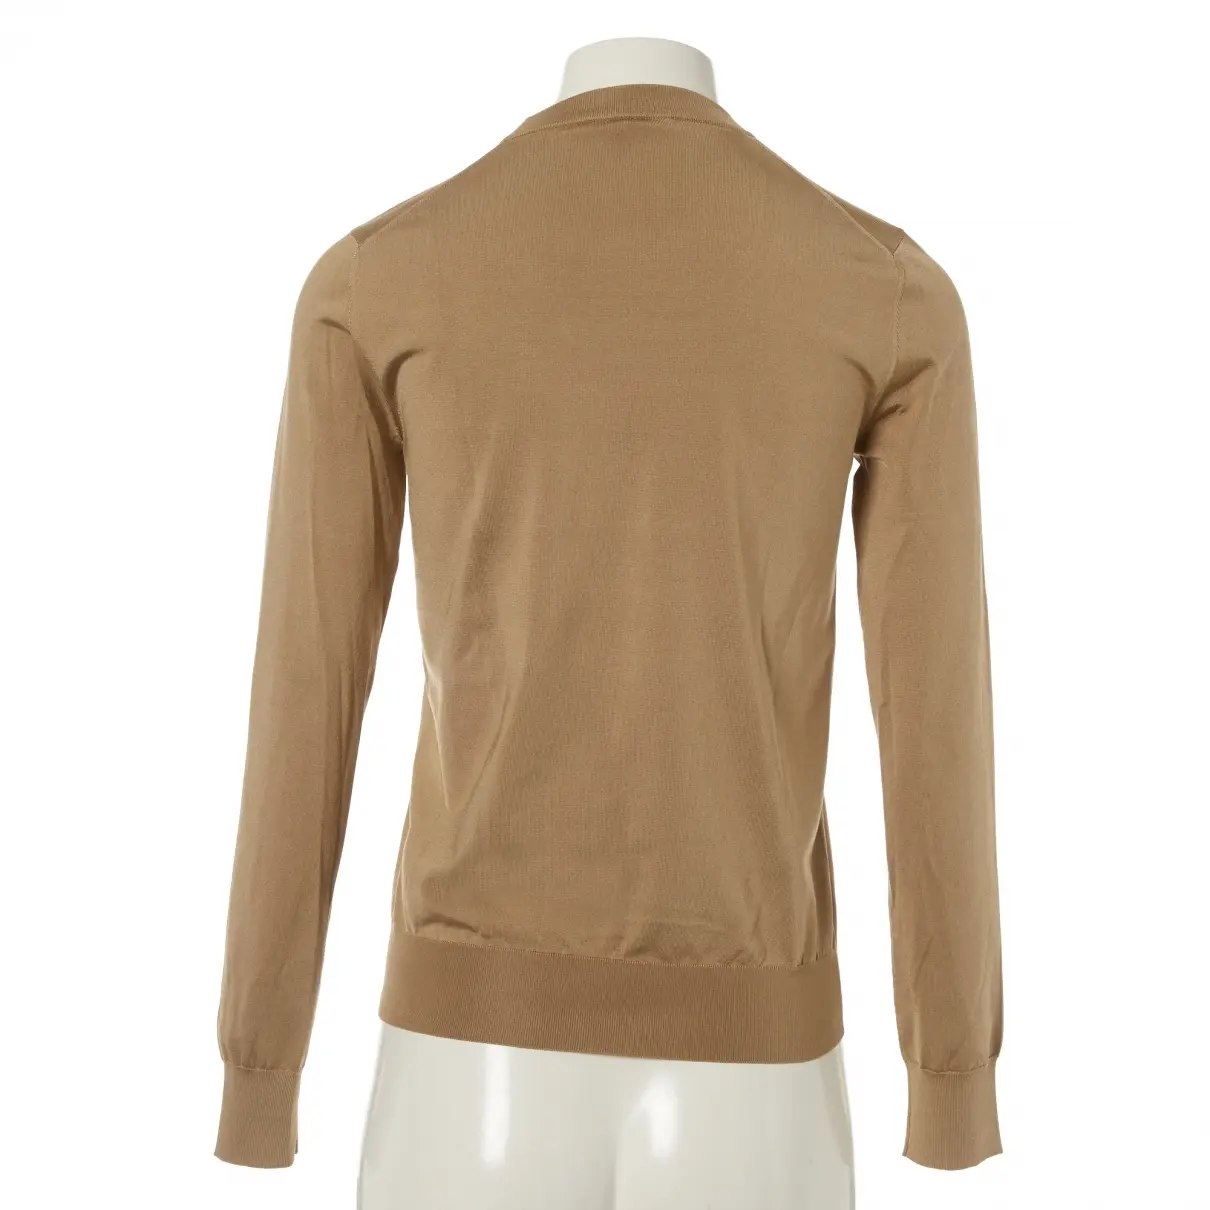 Buy Louis Vuitton Silk sweatshirt online